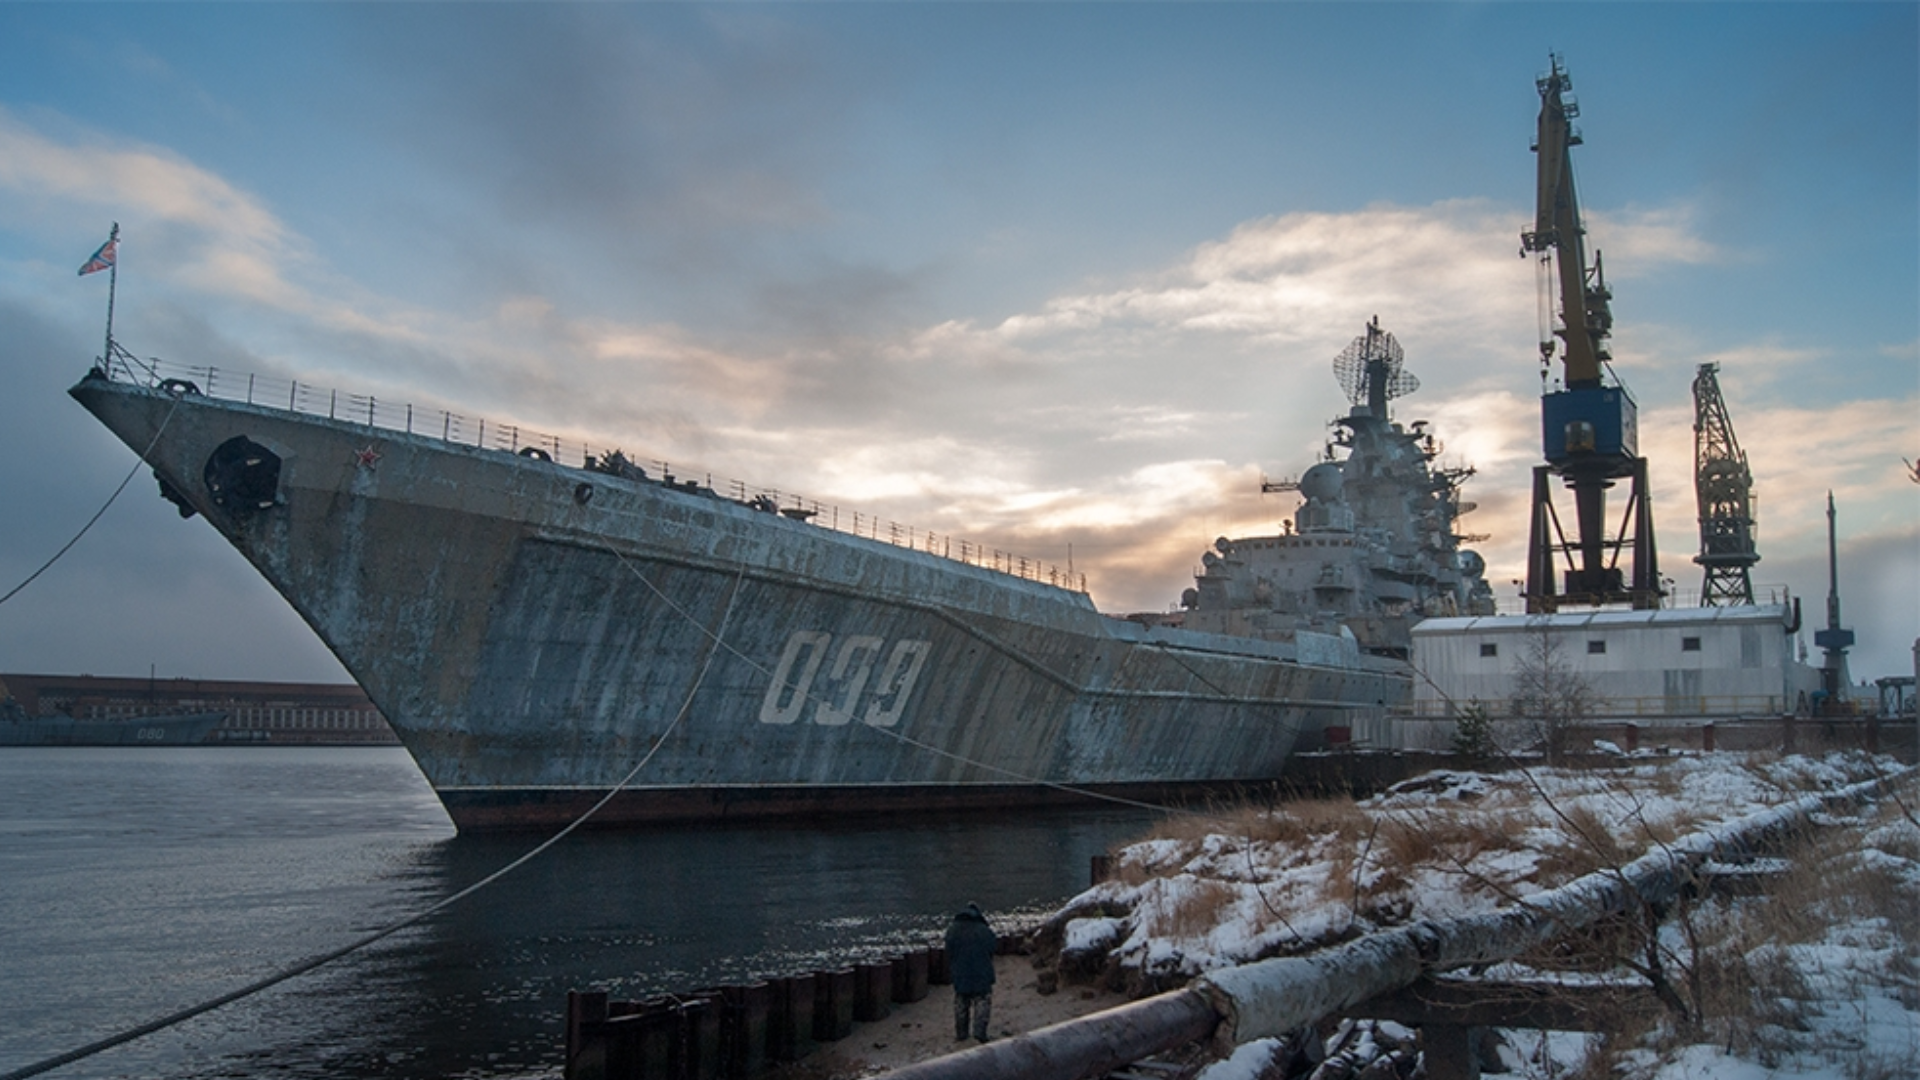 Παλαιά πυρηνοκίνητα καταδρομικά και υποβρύχια σκοπεύει να αποσύρει το ρωσικό Ναυτικό